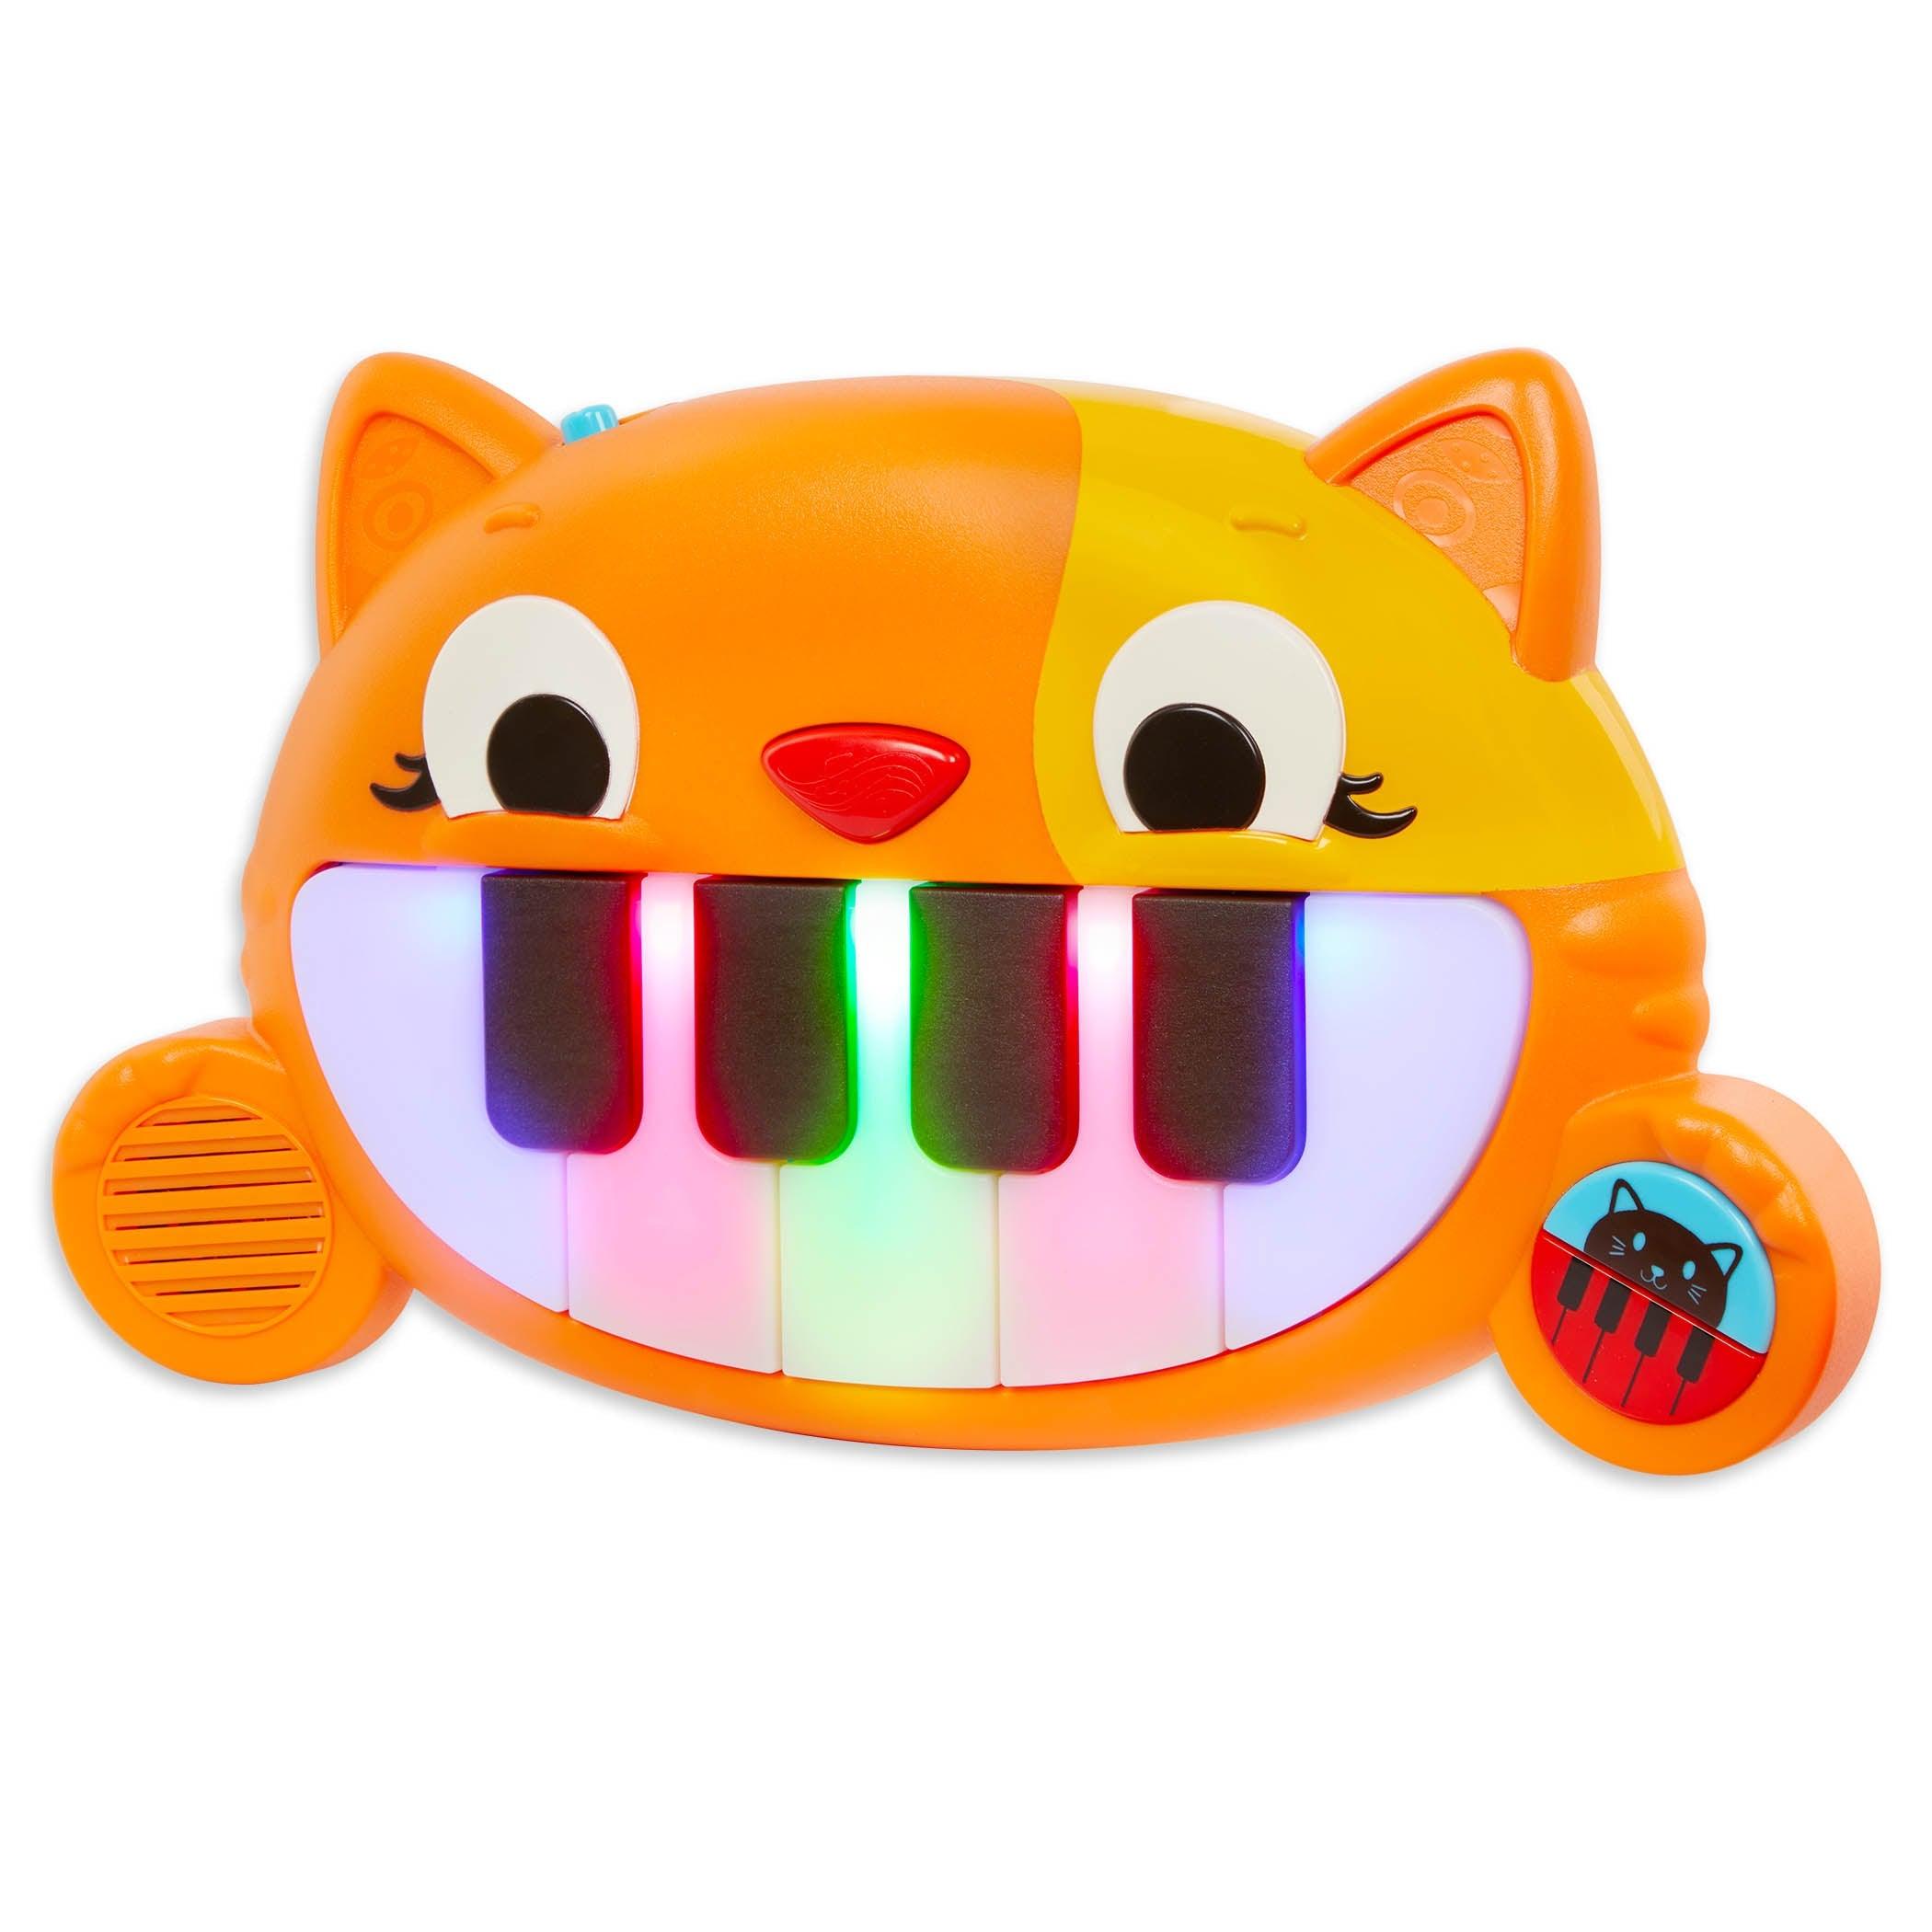 B.Toys: Mini piano de Kitty da criança meiawsic